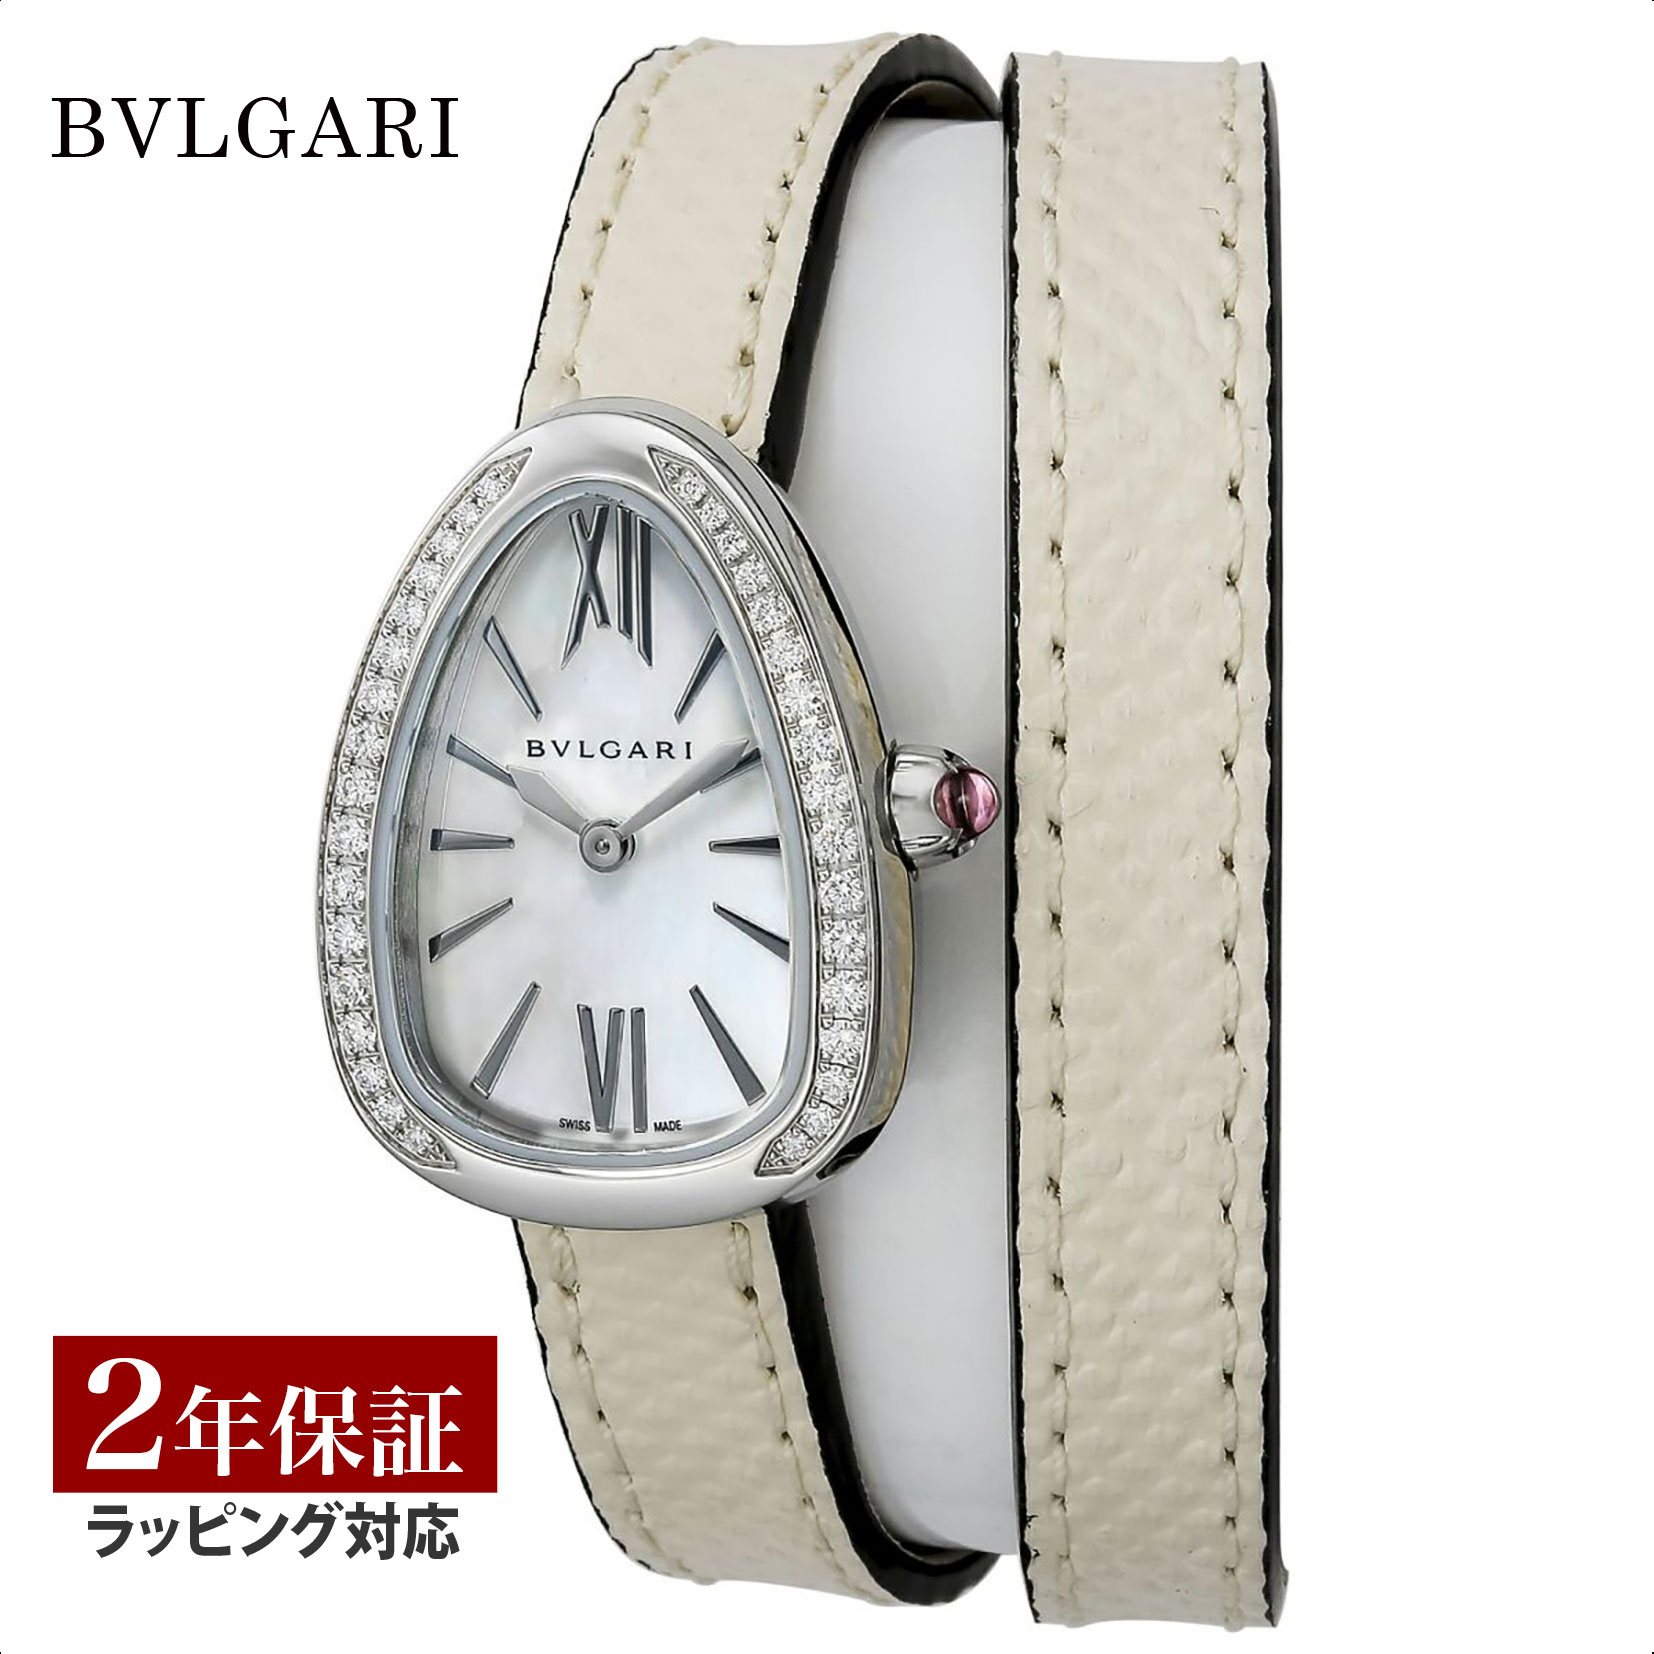 ブルガリ BVLGARI レディース 時計 Serpenti セルペンティ クォーツ ホワイトパール SPS27WSDL 時計 腕時計 高級腕時計 ブランド 